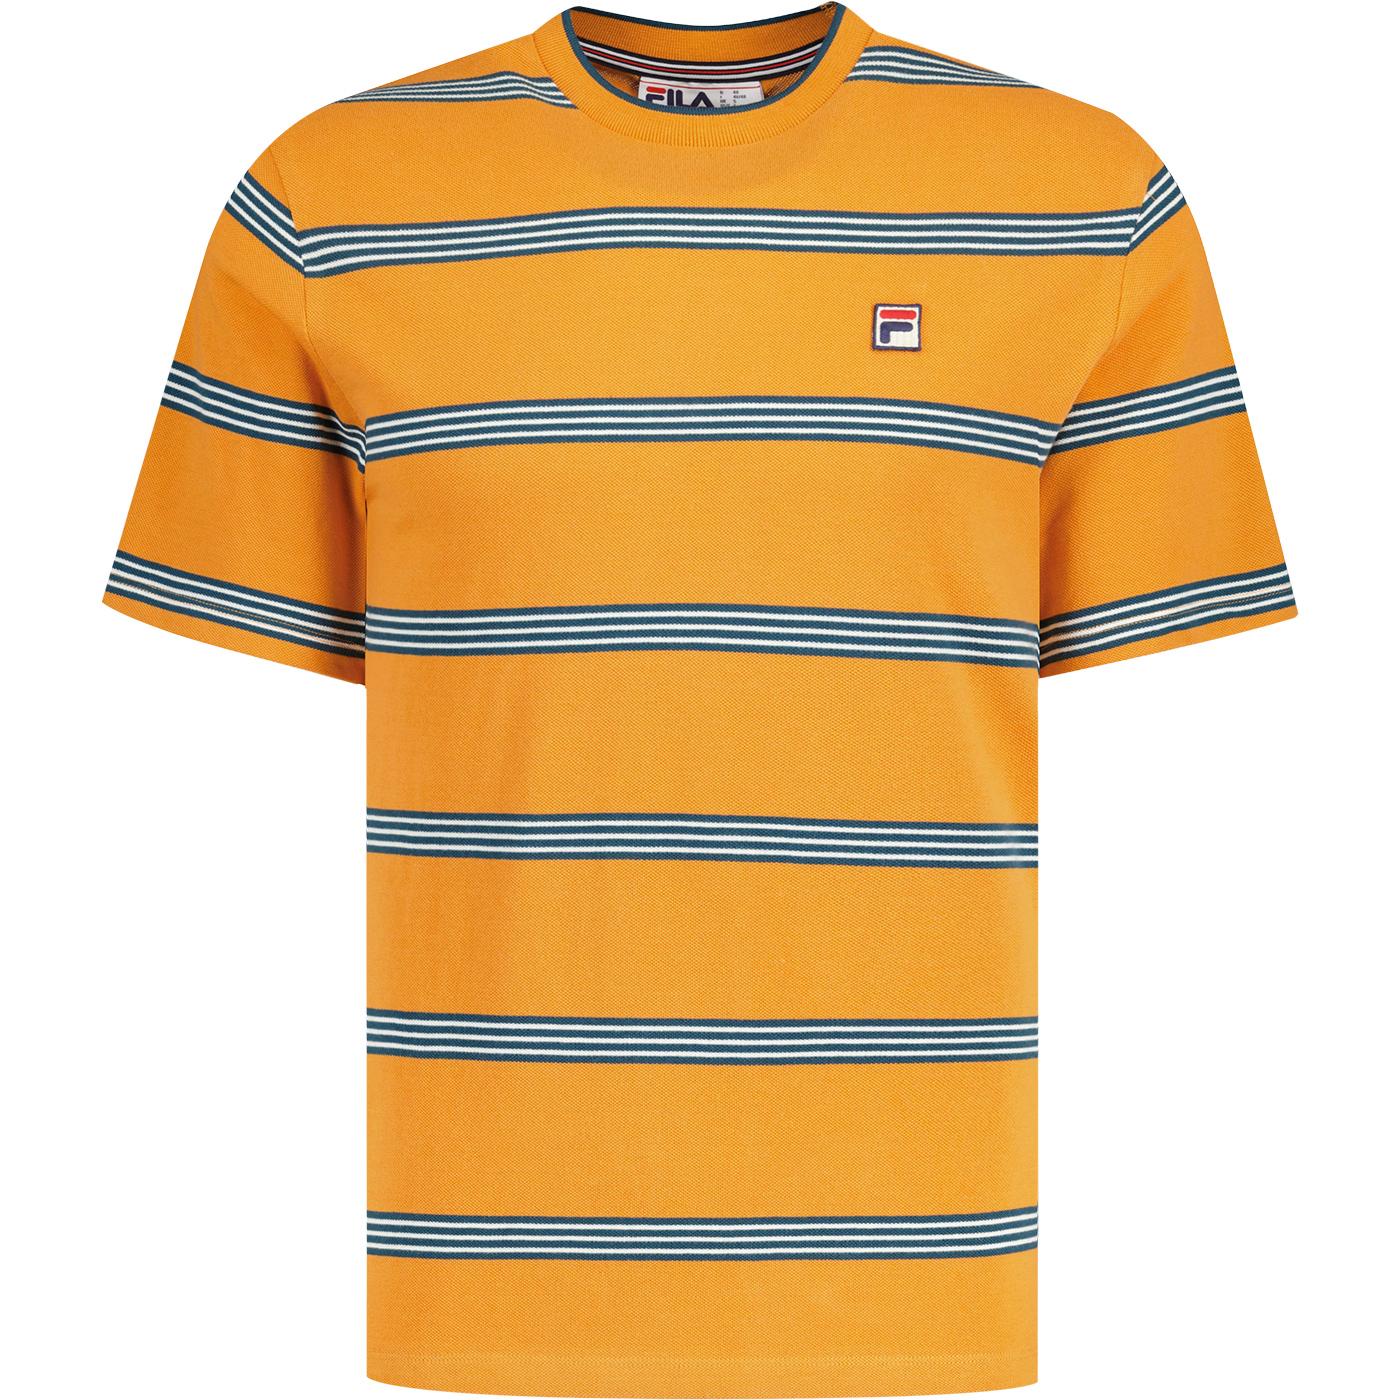 Chapman Fila Vintage Yarn Dyed Striped T-shirt Y/O